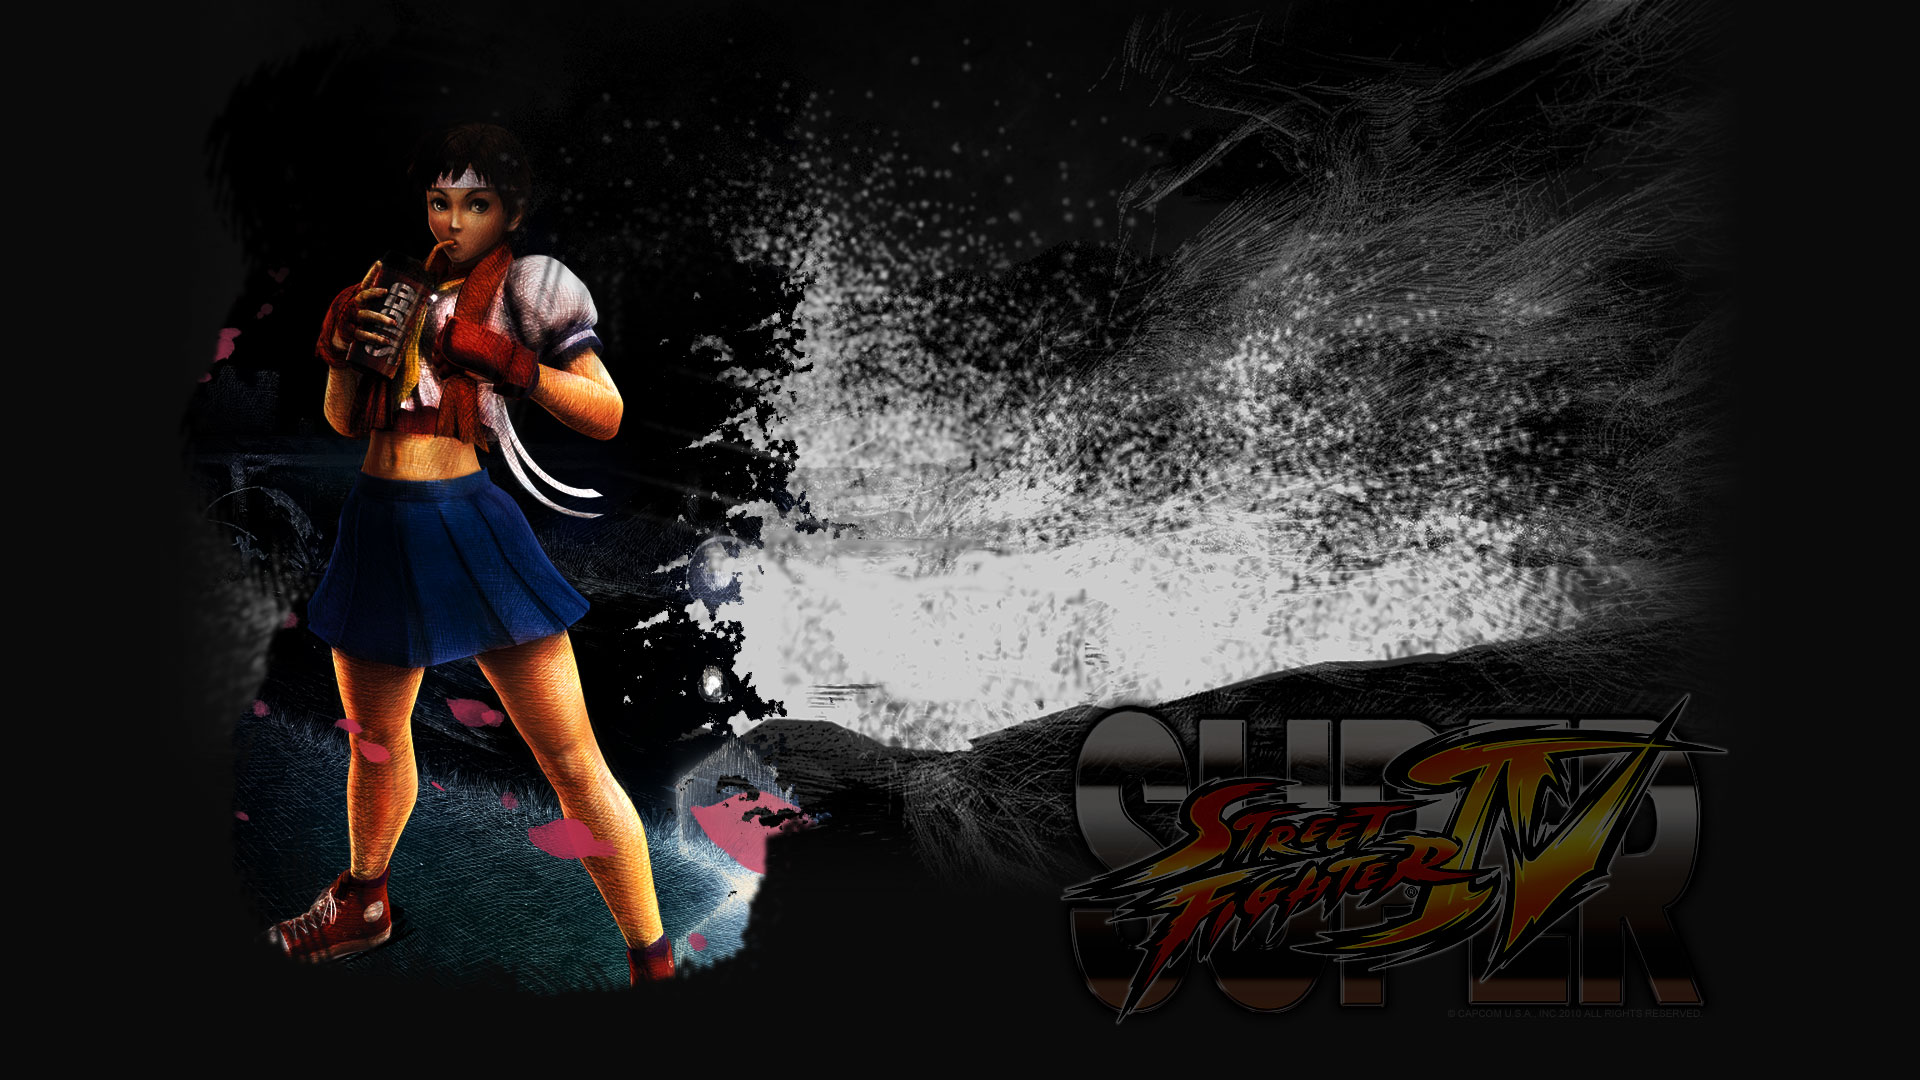 Sakura Street Fighter Wallpaper